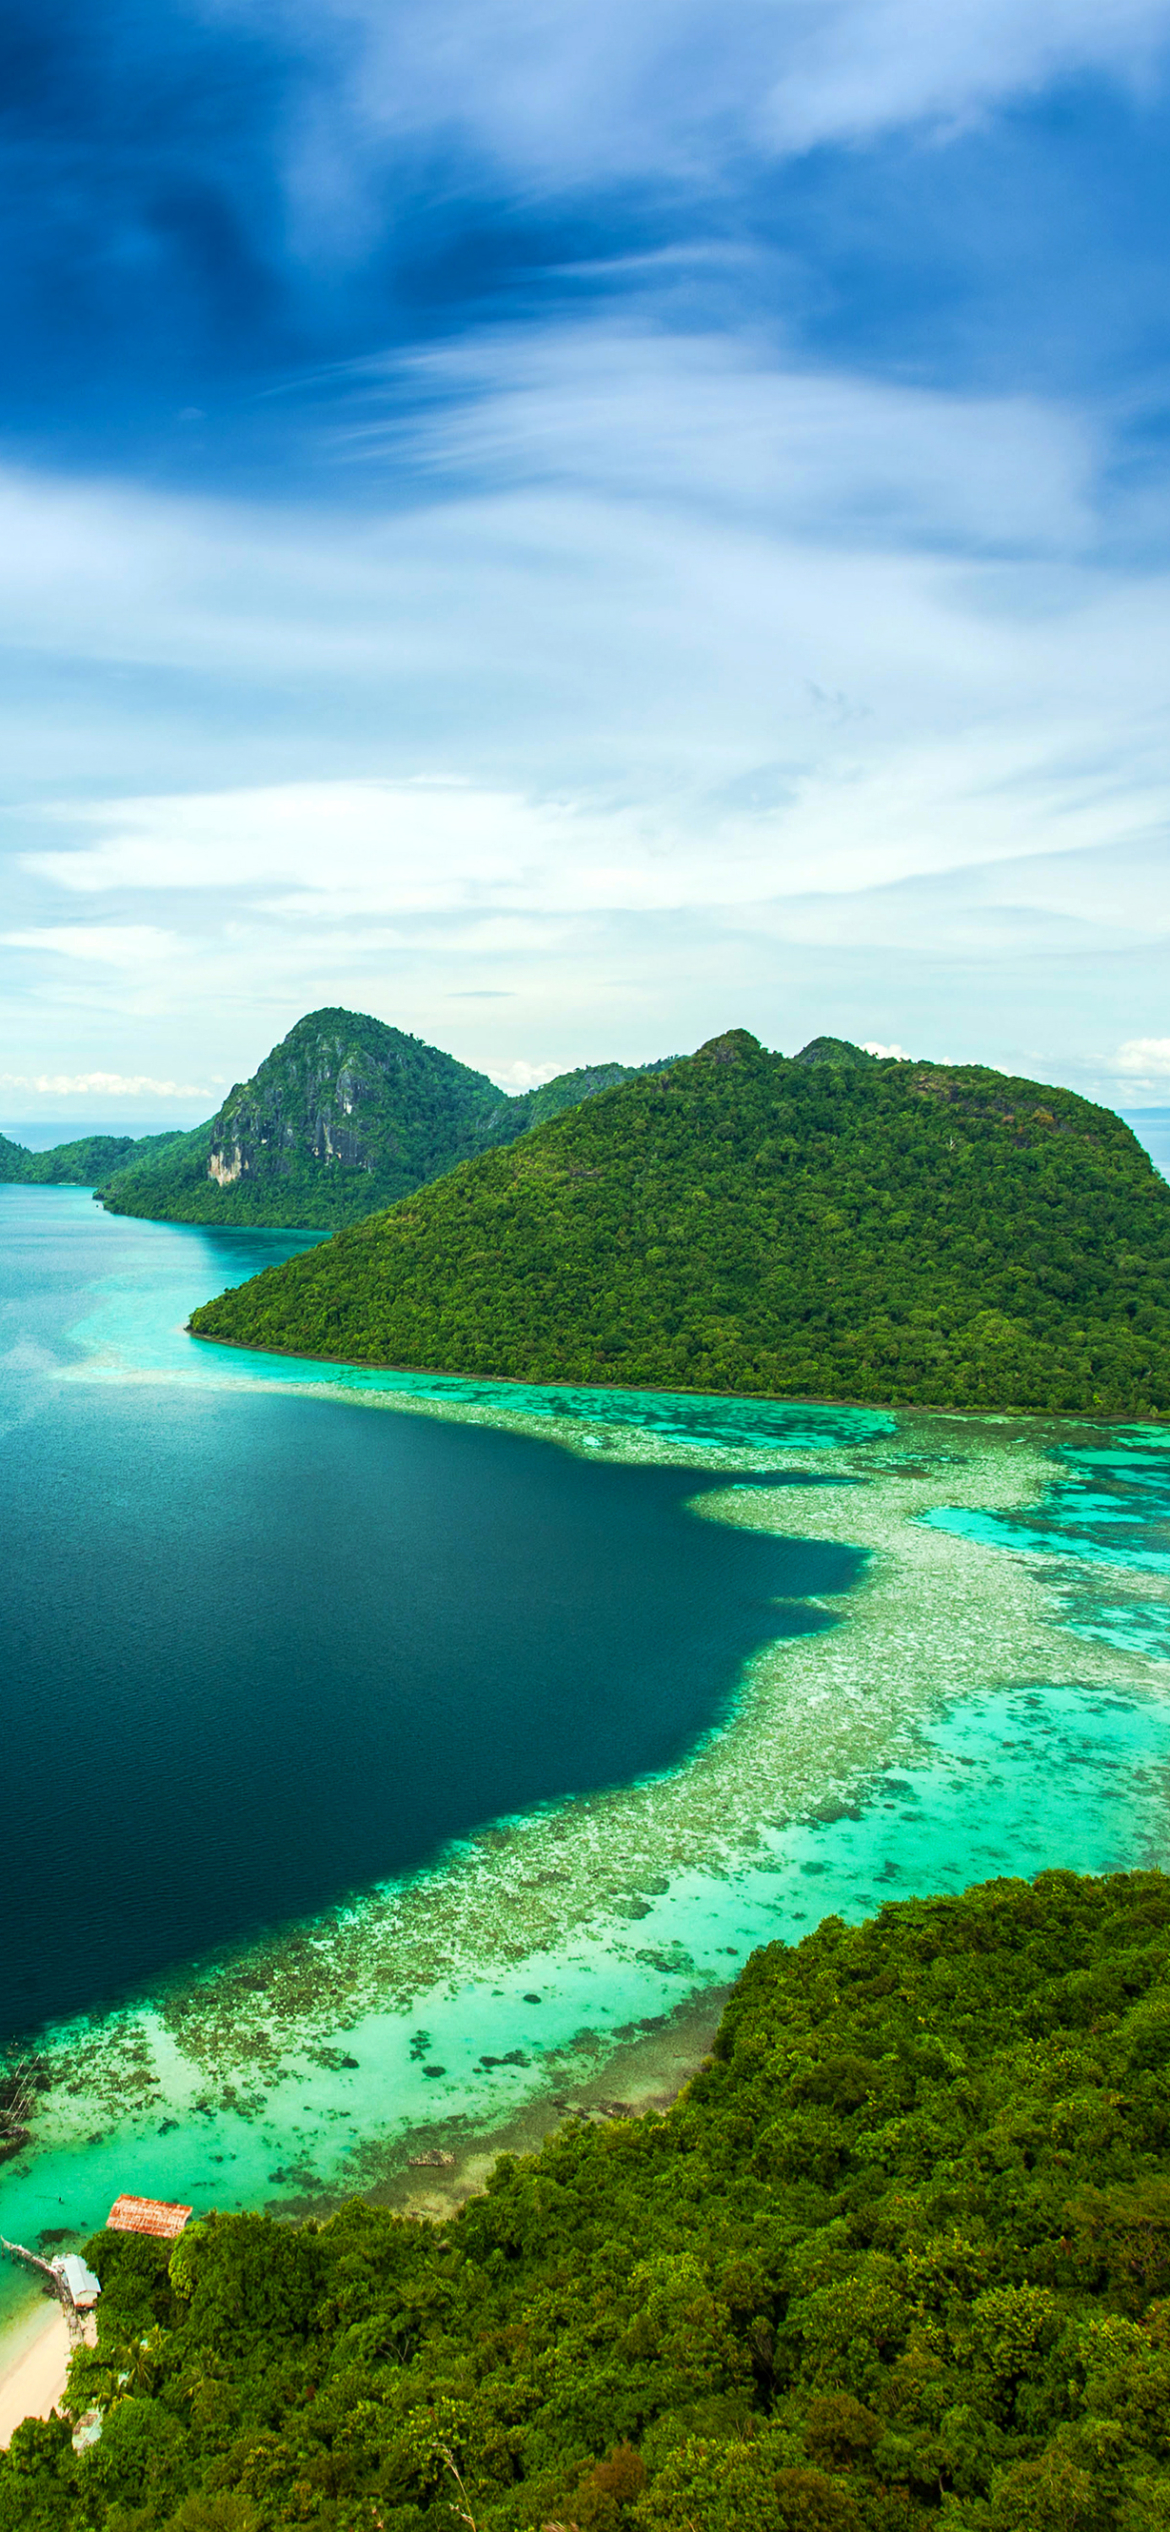 Скачать картинку Остров, Береговая Линия, Малайзия, Фотографии в телефон бесплатно.